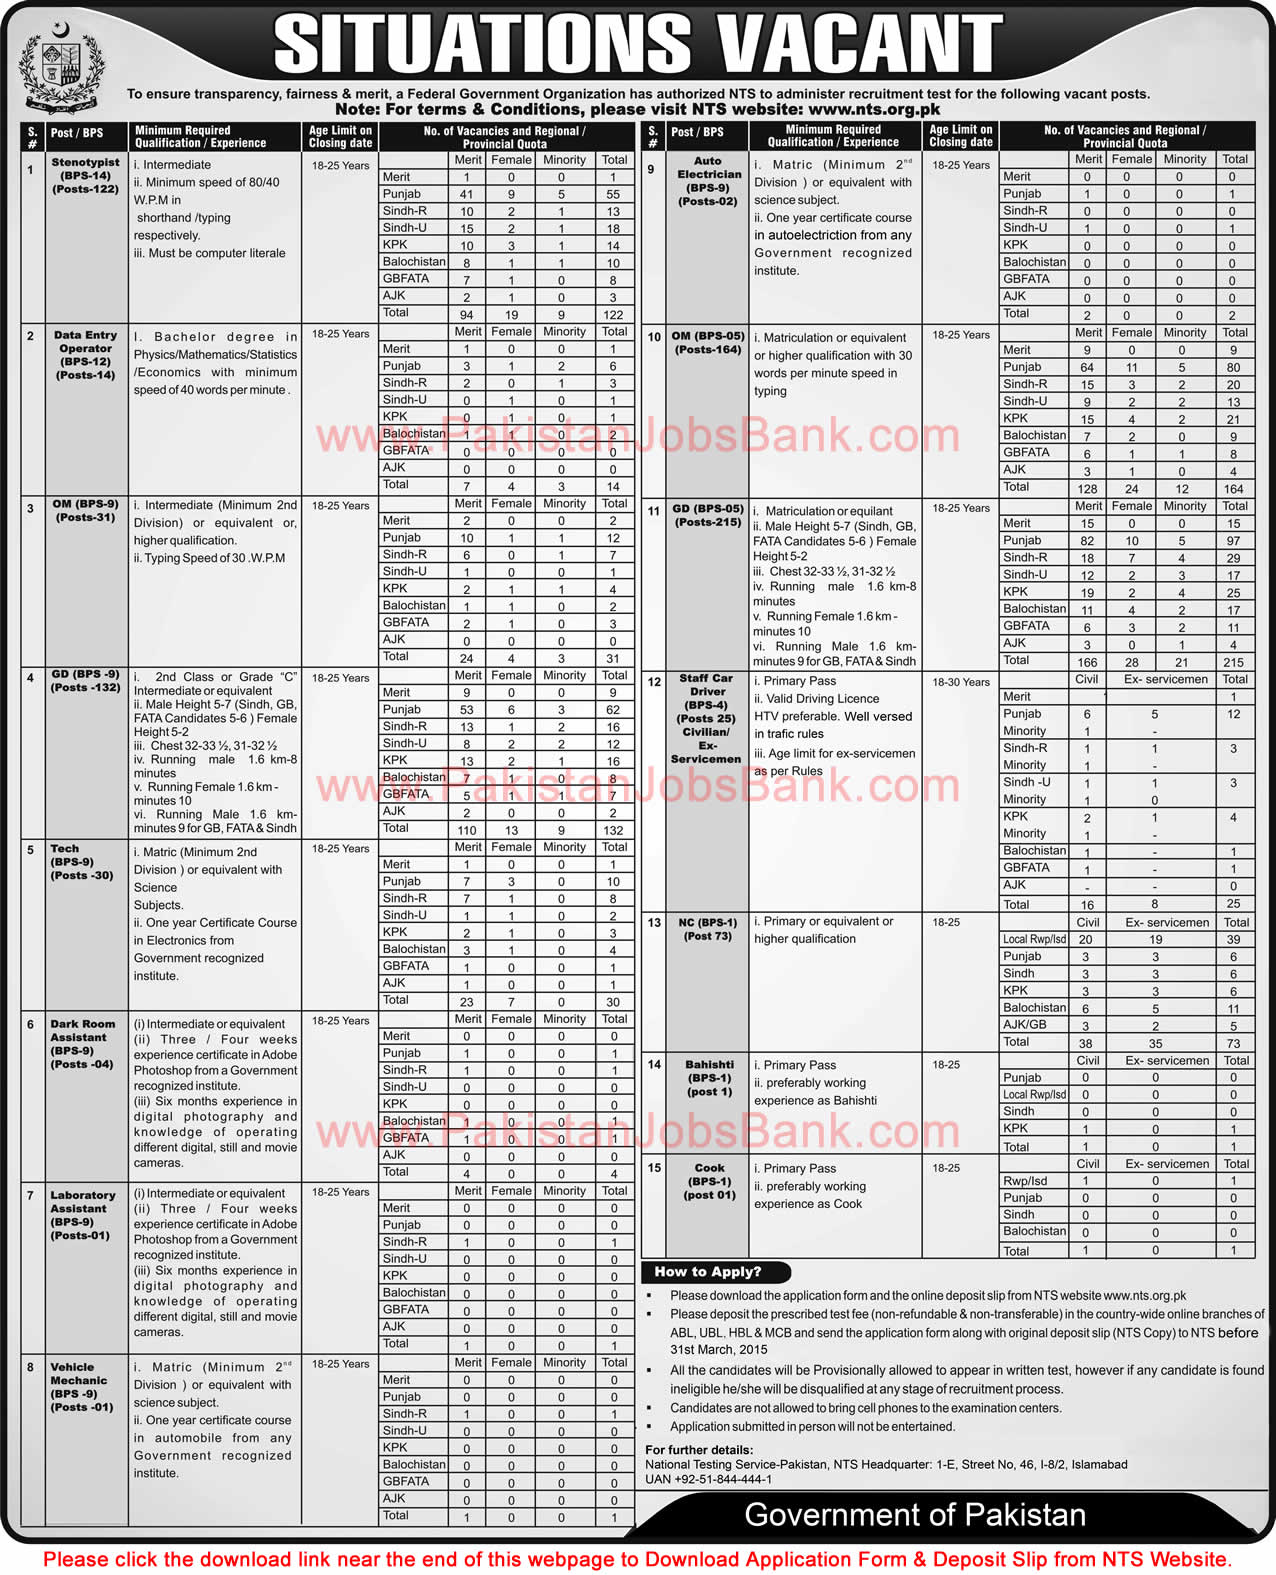 Intelligence Bureau Pakistan Jobs 2015 March NTS Application Form Download IB Latest